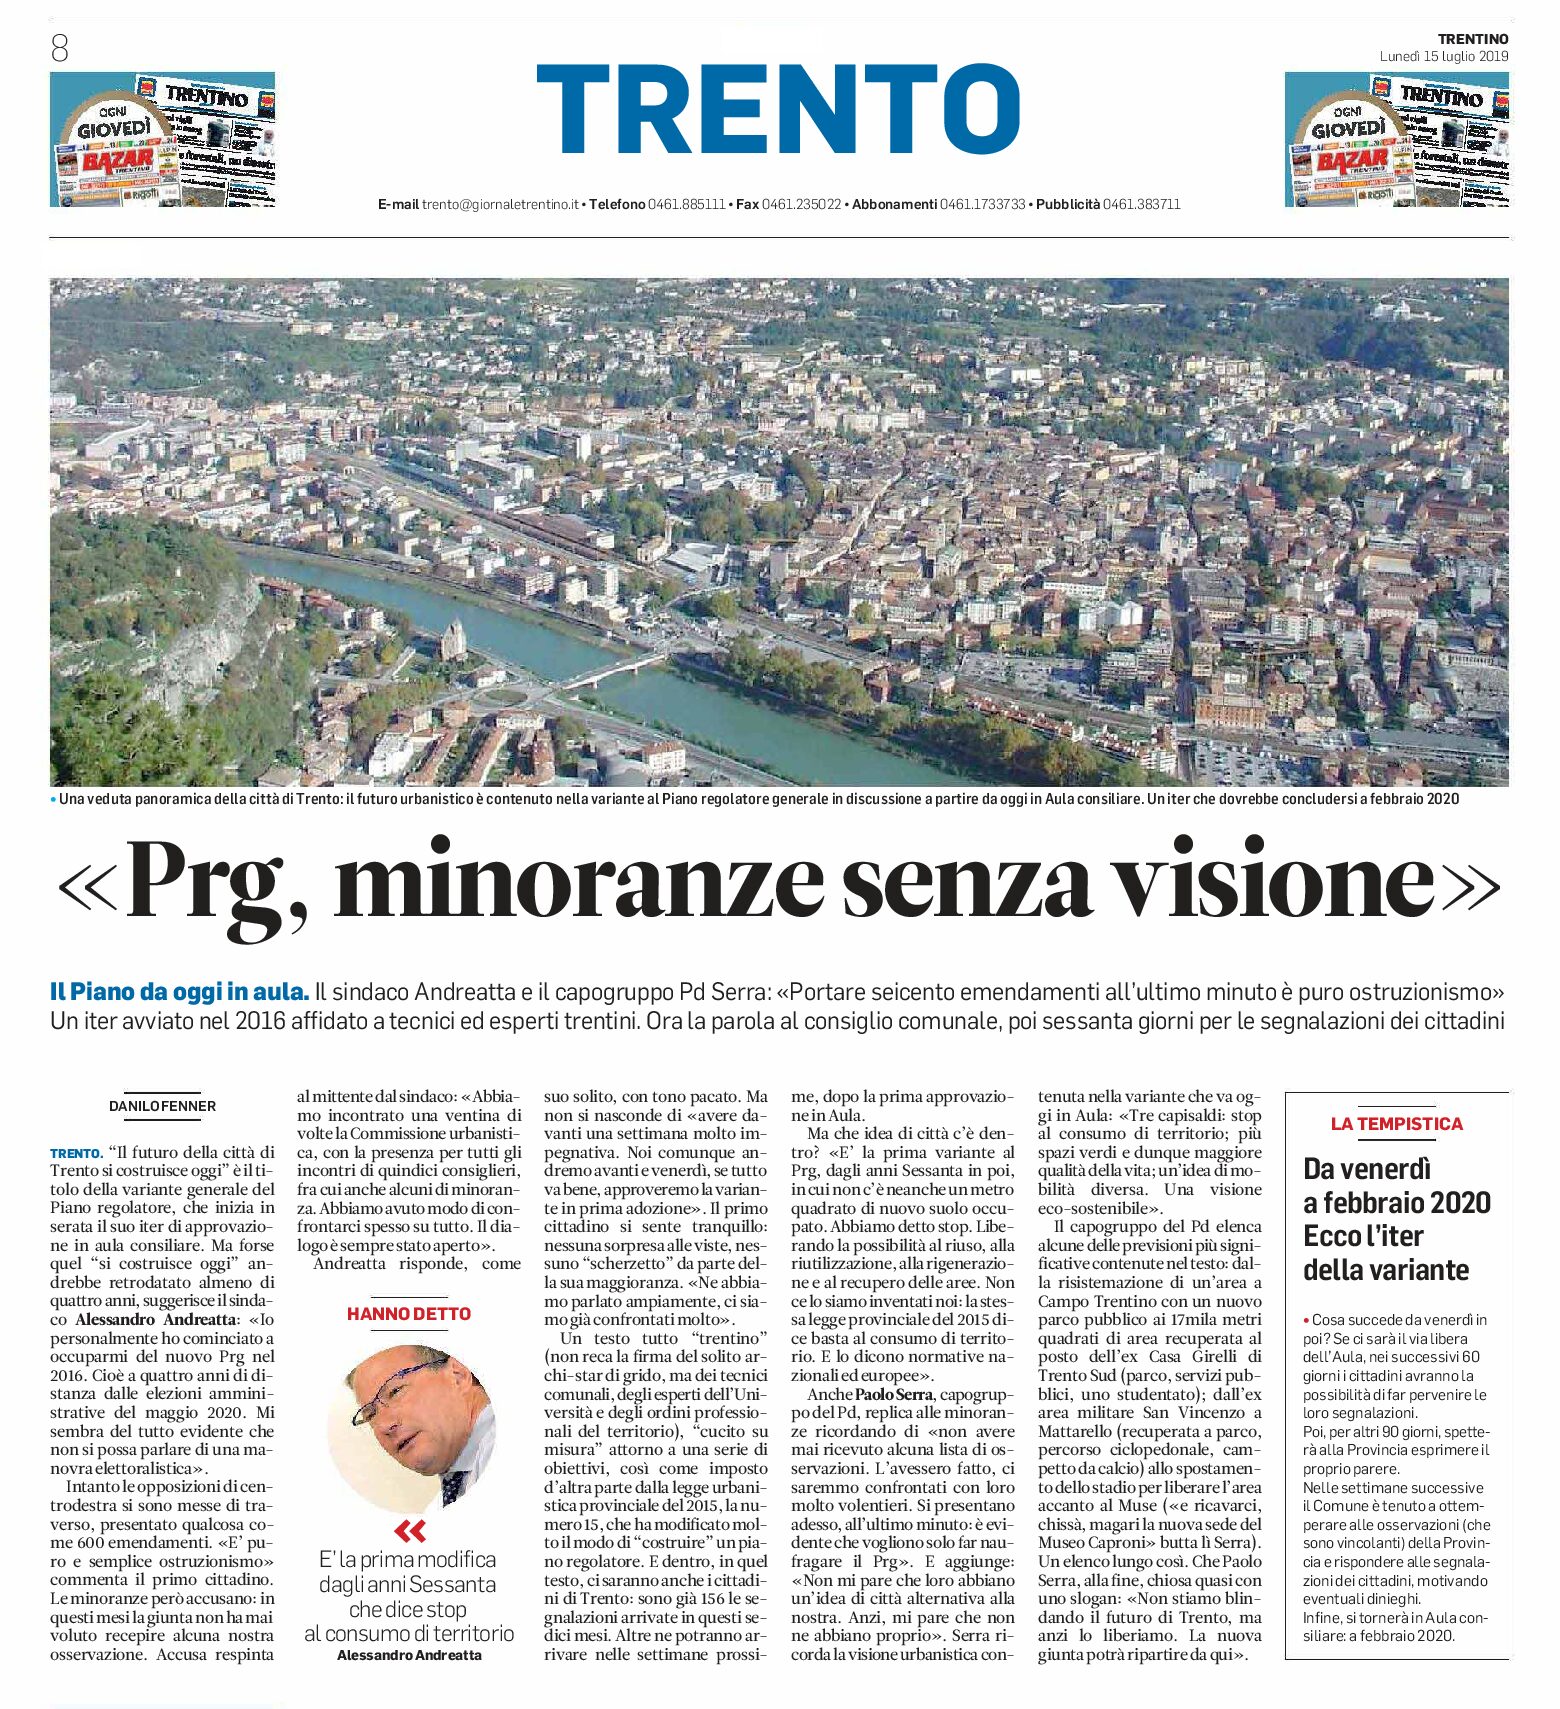 Trento, Prg: minoranze senza visione. Il Piano da oggi in aula, poi 60 giorni per le segnalazioni dei cittadini